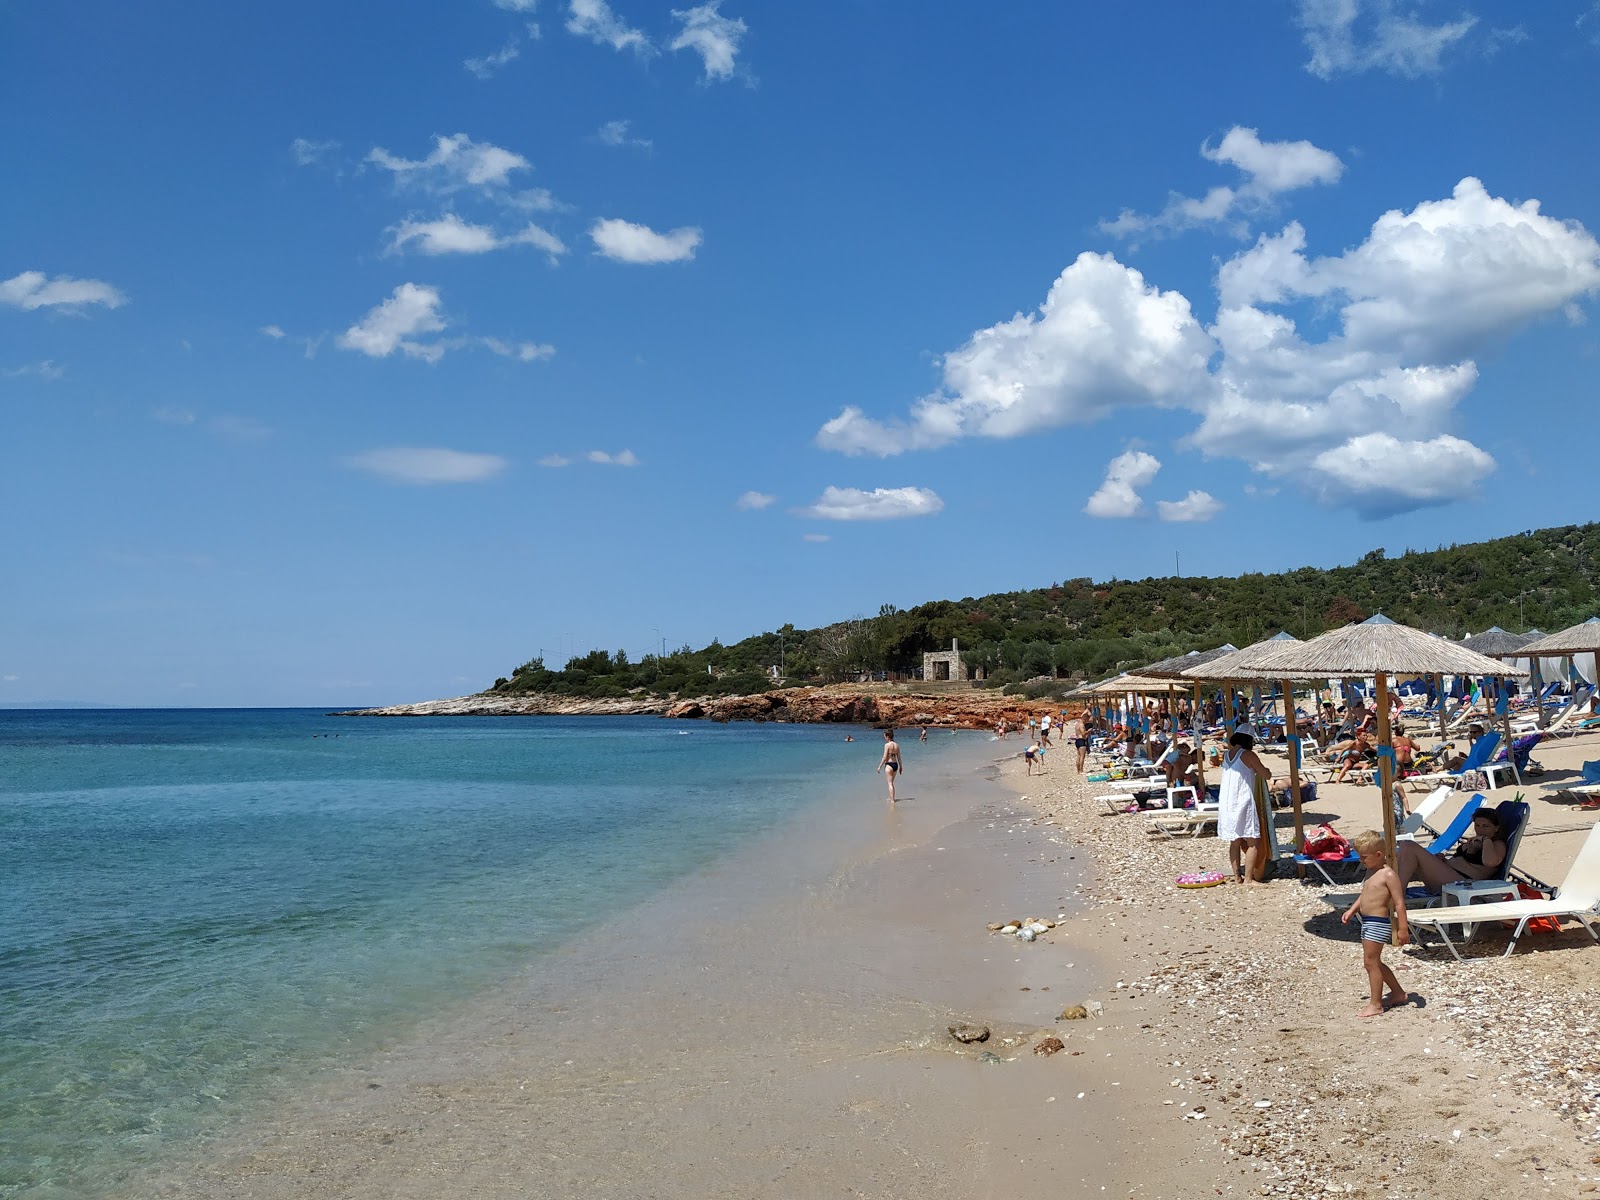 Psili Ammos'in fotoğrafı parlak kum yüzey ile